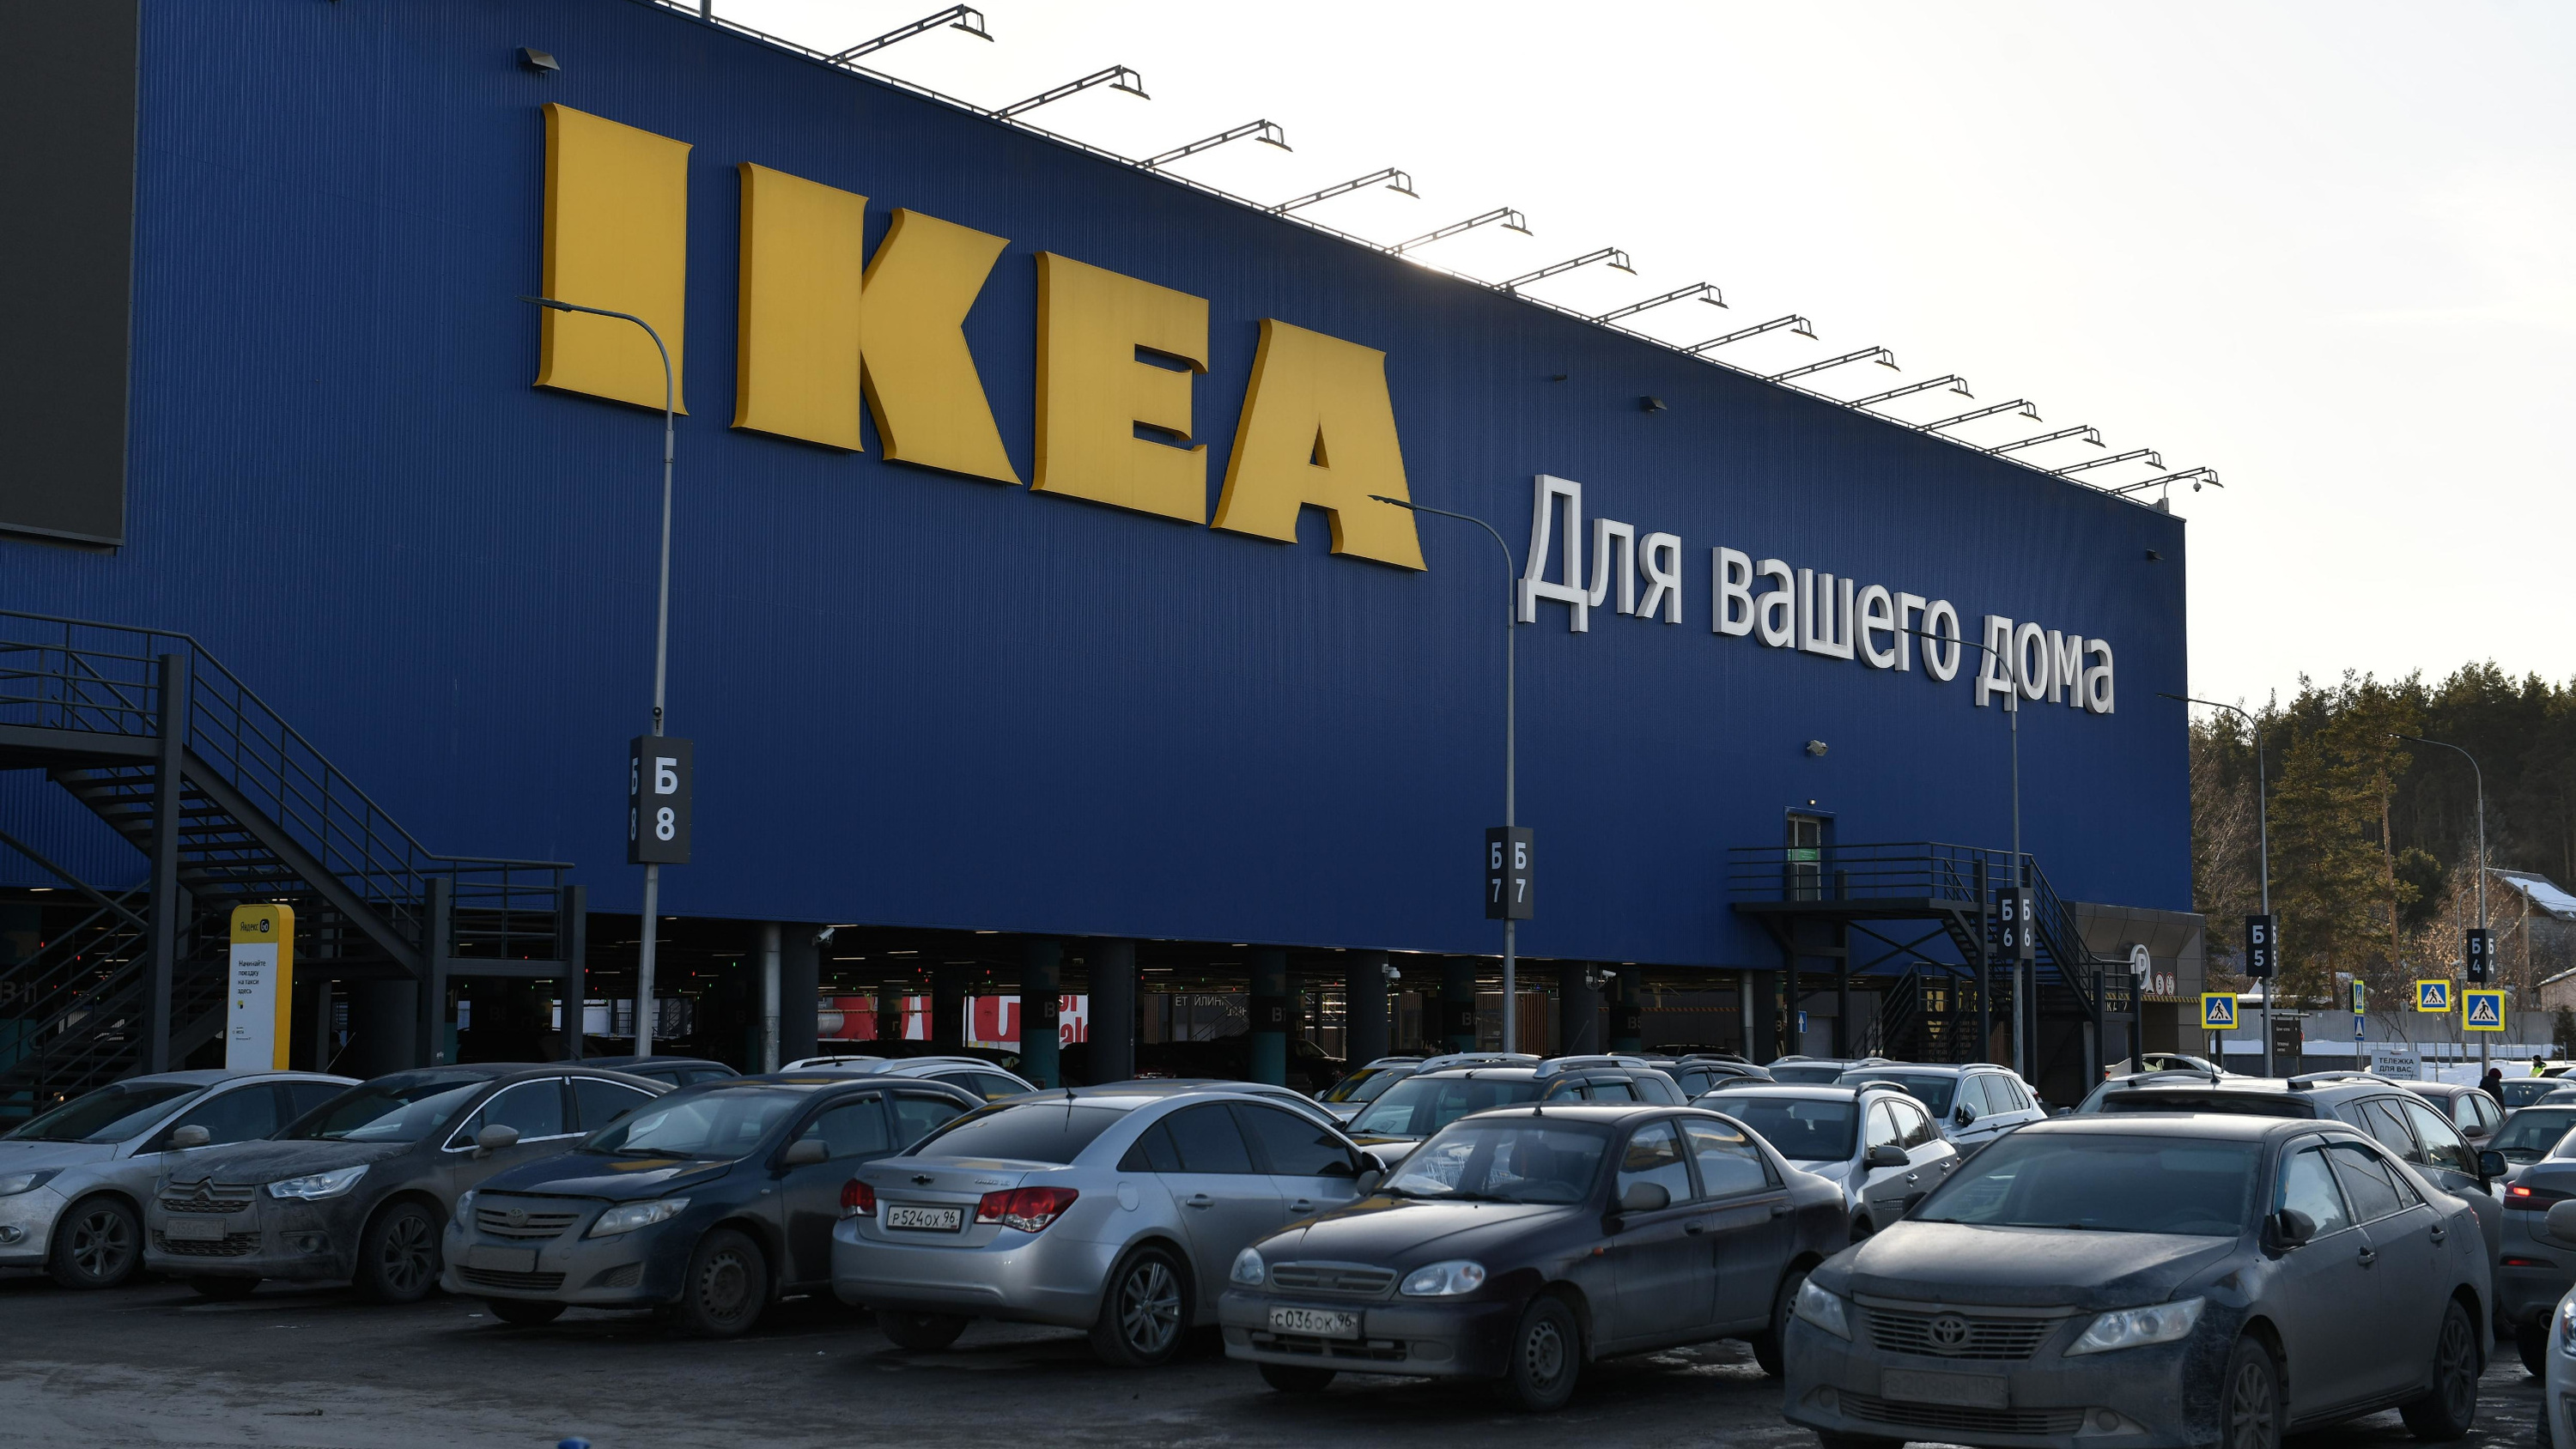 Спустя полтора года простоя. Стало известно, что откроется на месте IKEA в Екатеринбурге